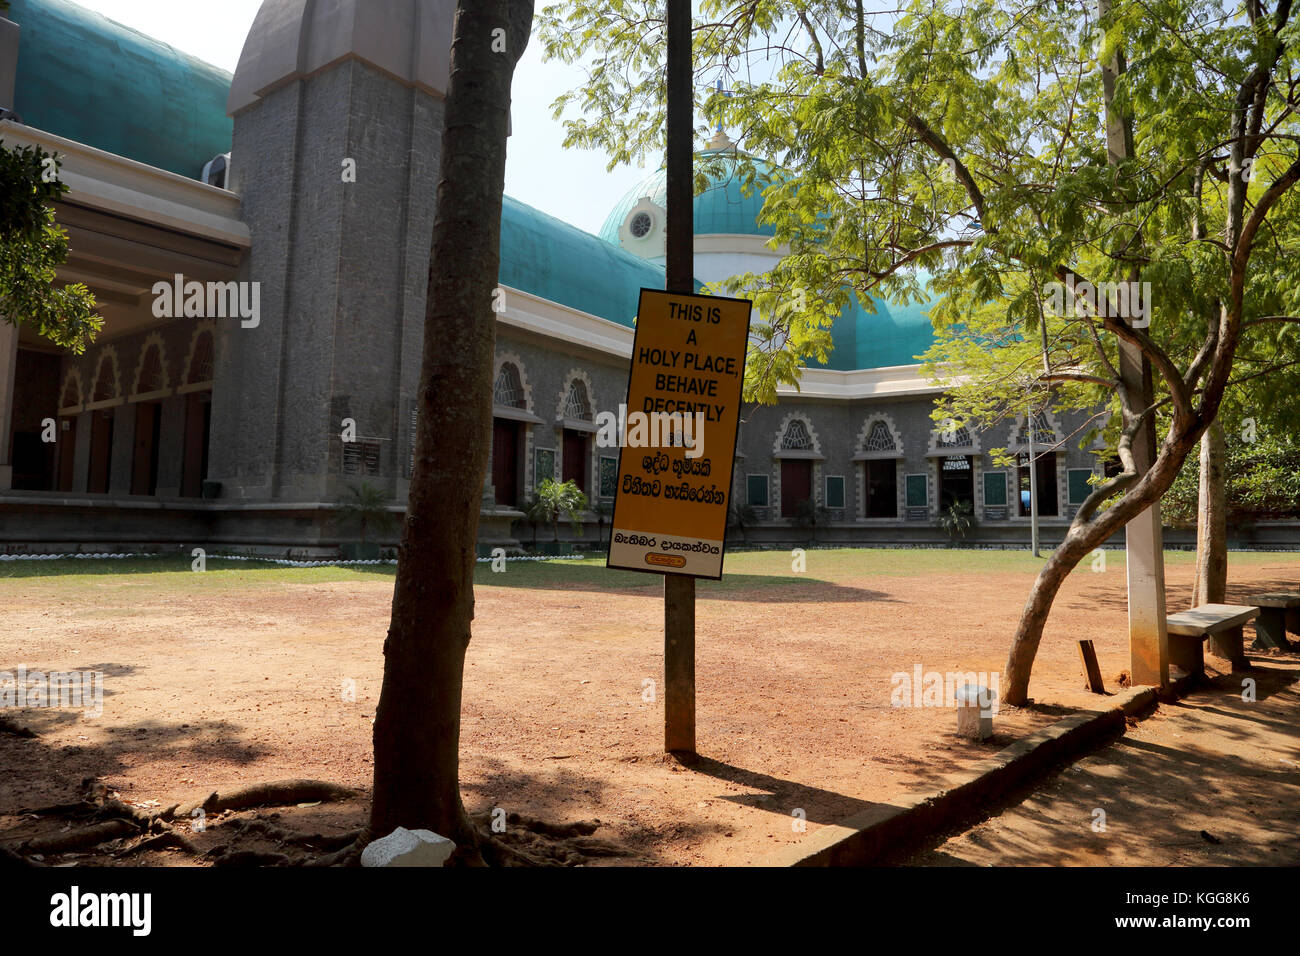 Basilica di Nostra Signora di Lanka tewatte ragama sri lanka segno multilingue per il migliore comportamento "Questo luogo è santo si prega di comportarsi dignitosamente' Foto Stock